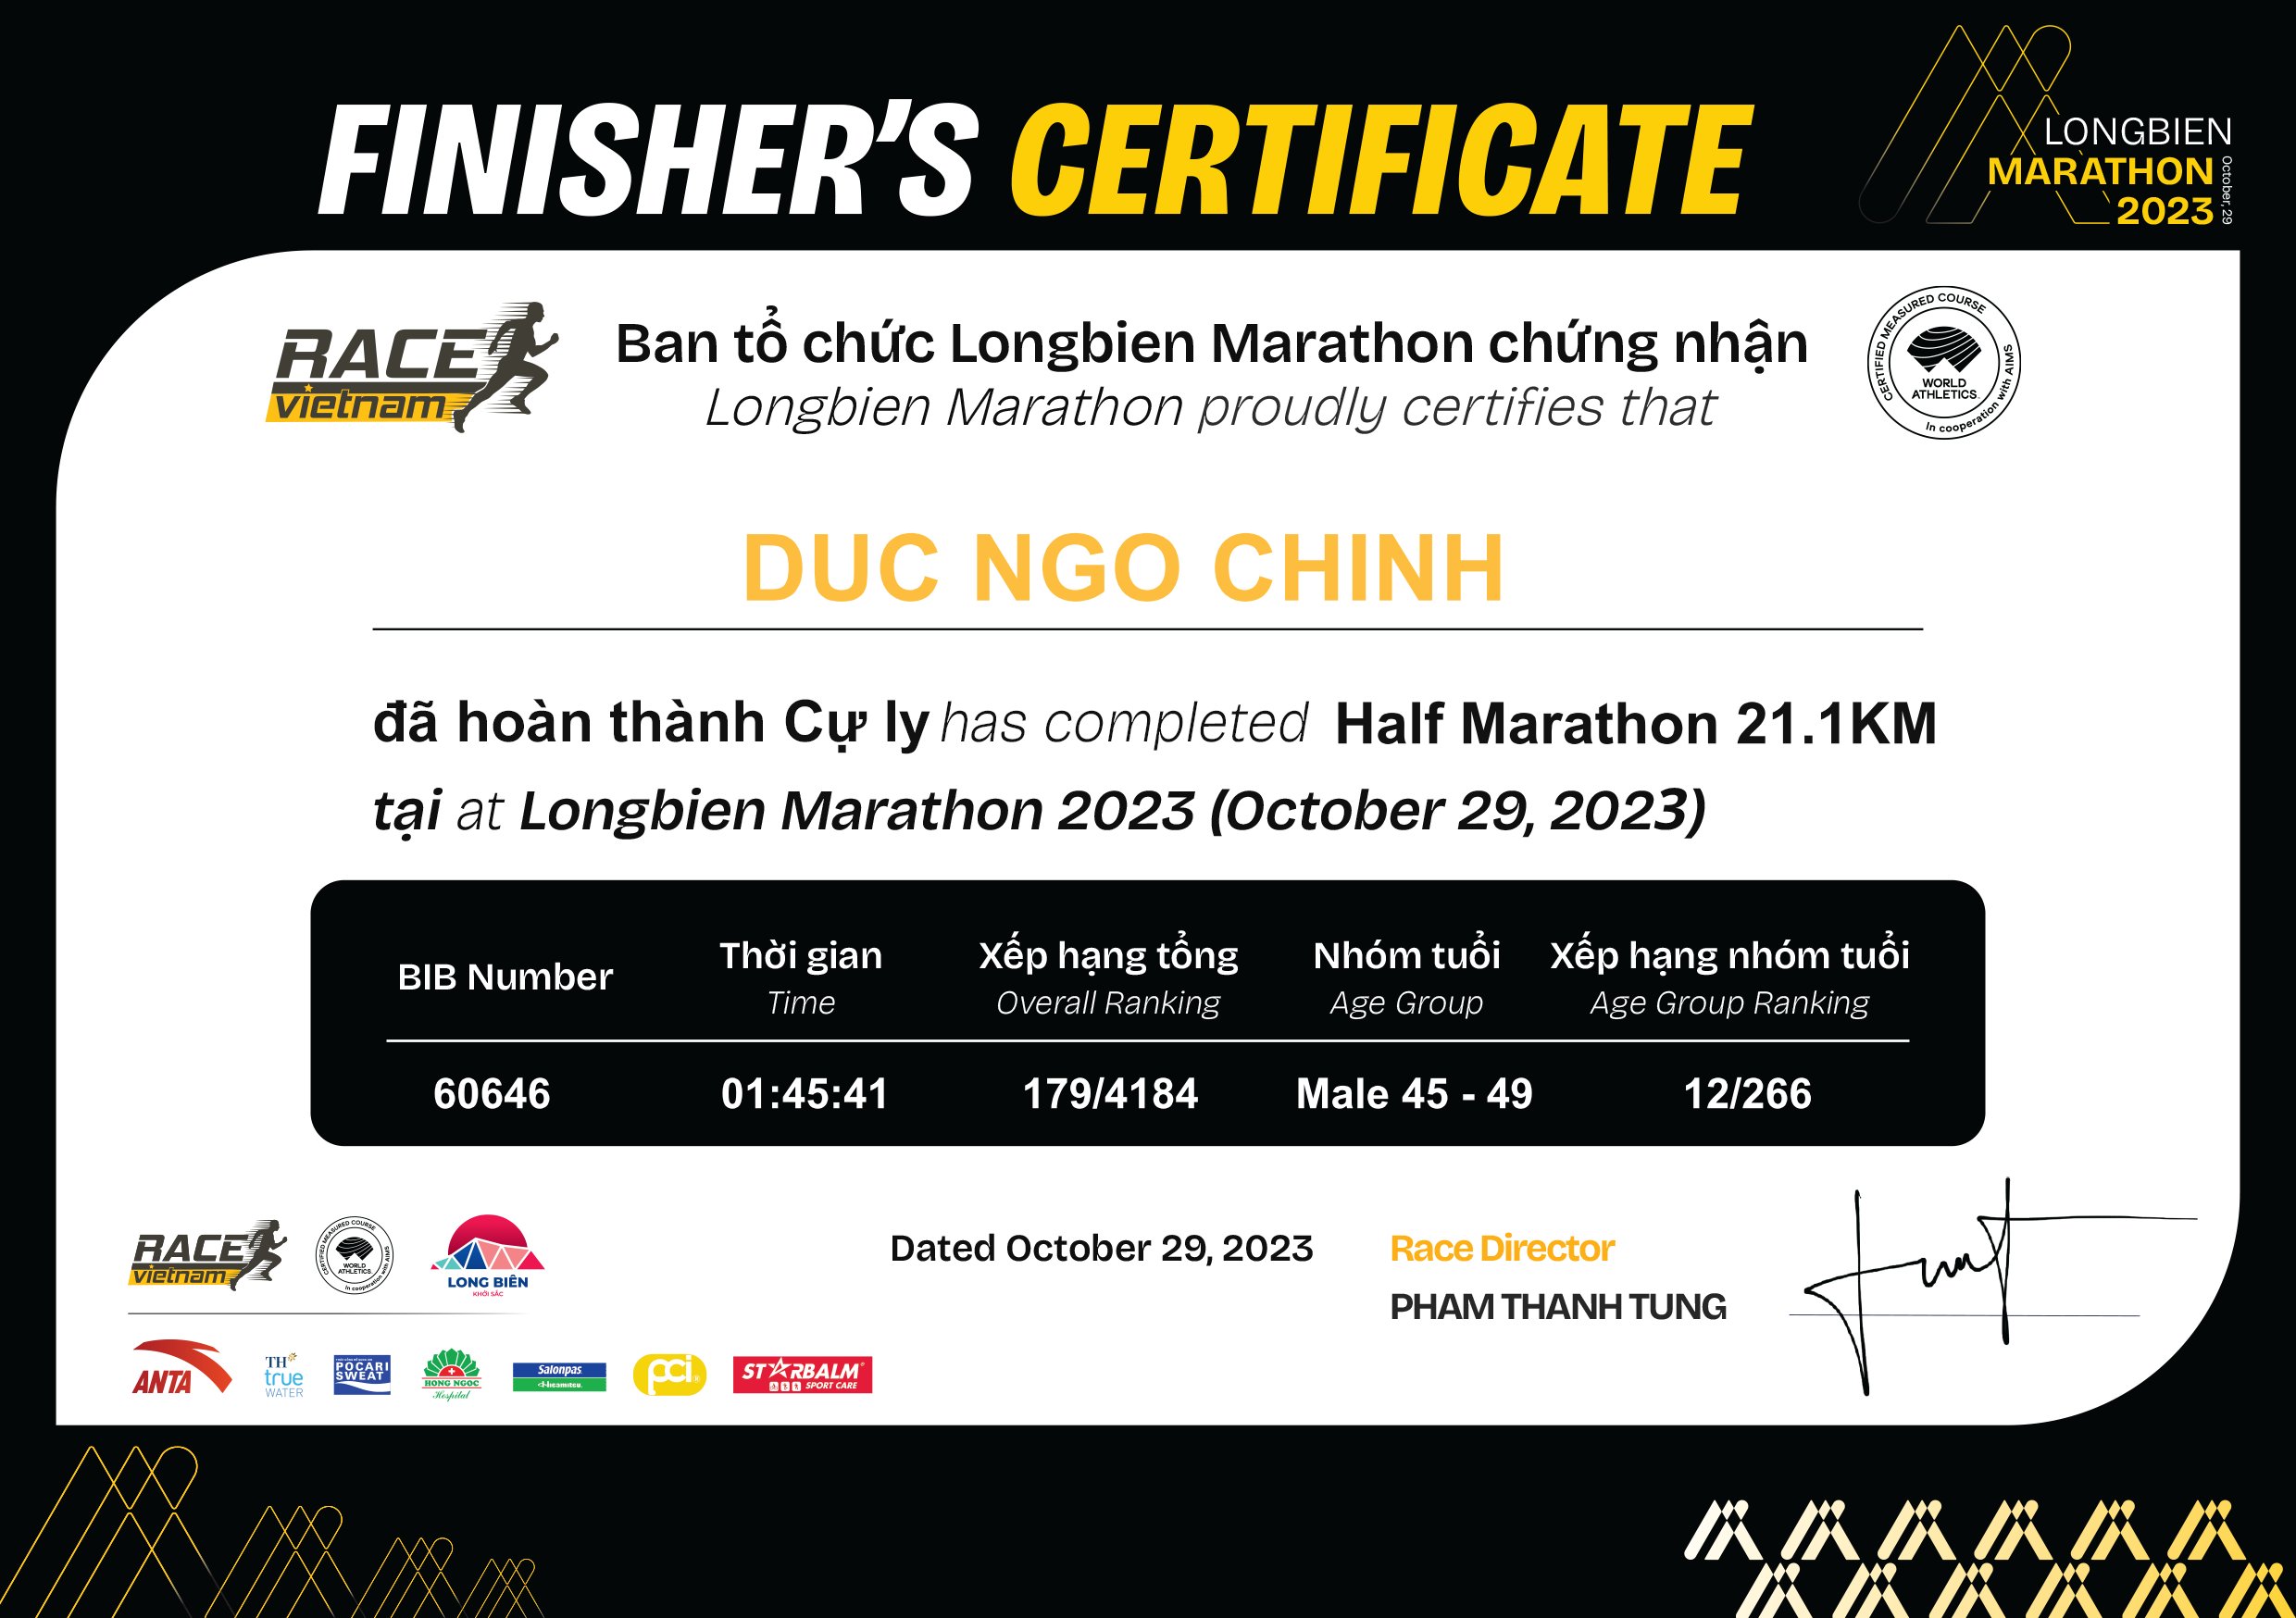 60646 - Duc Ngo Chinh